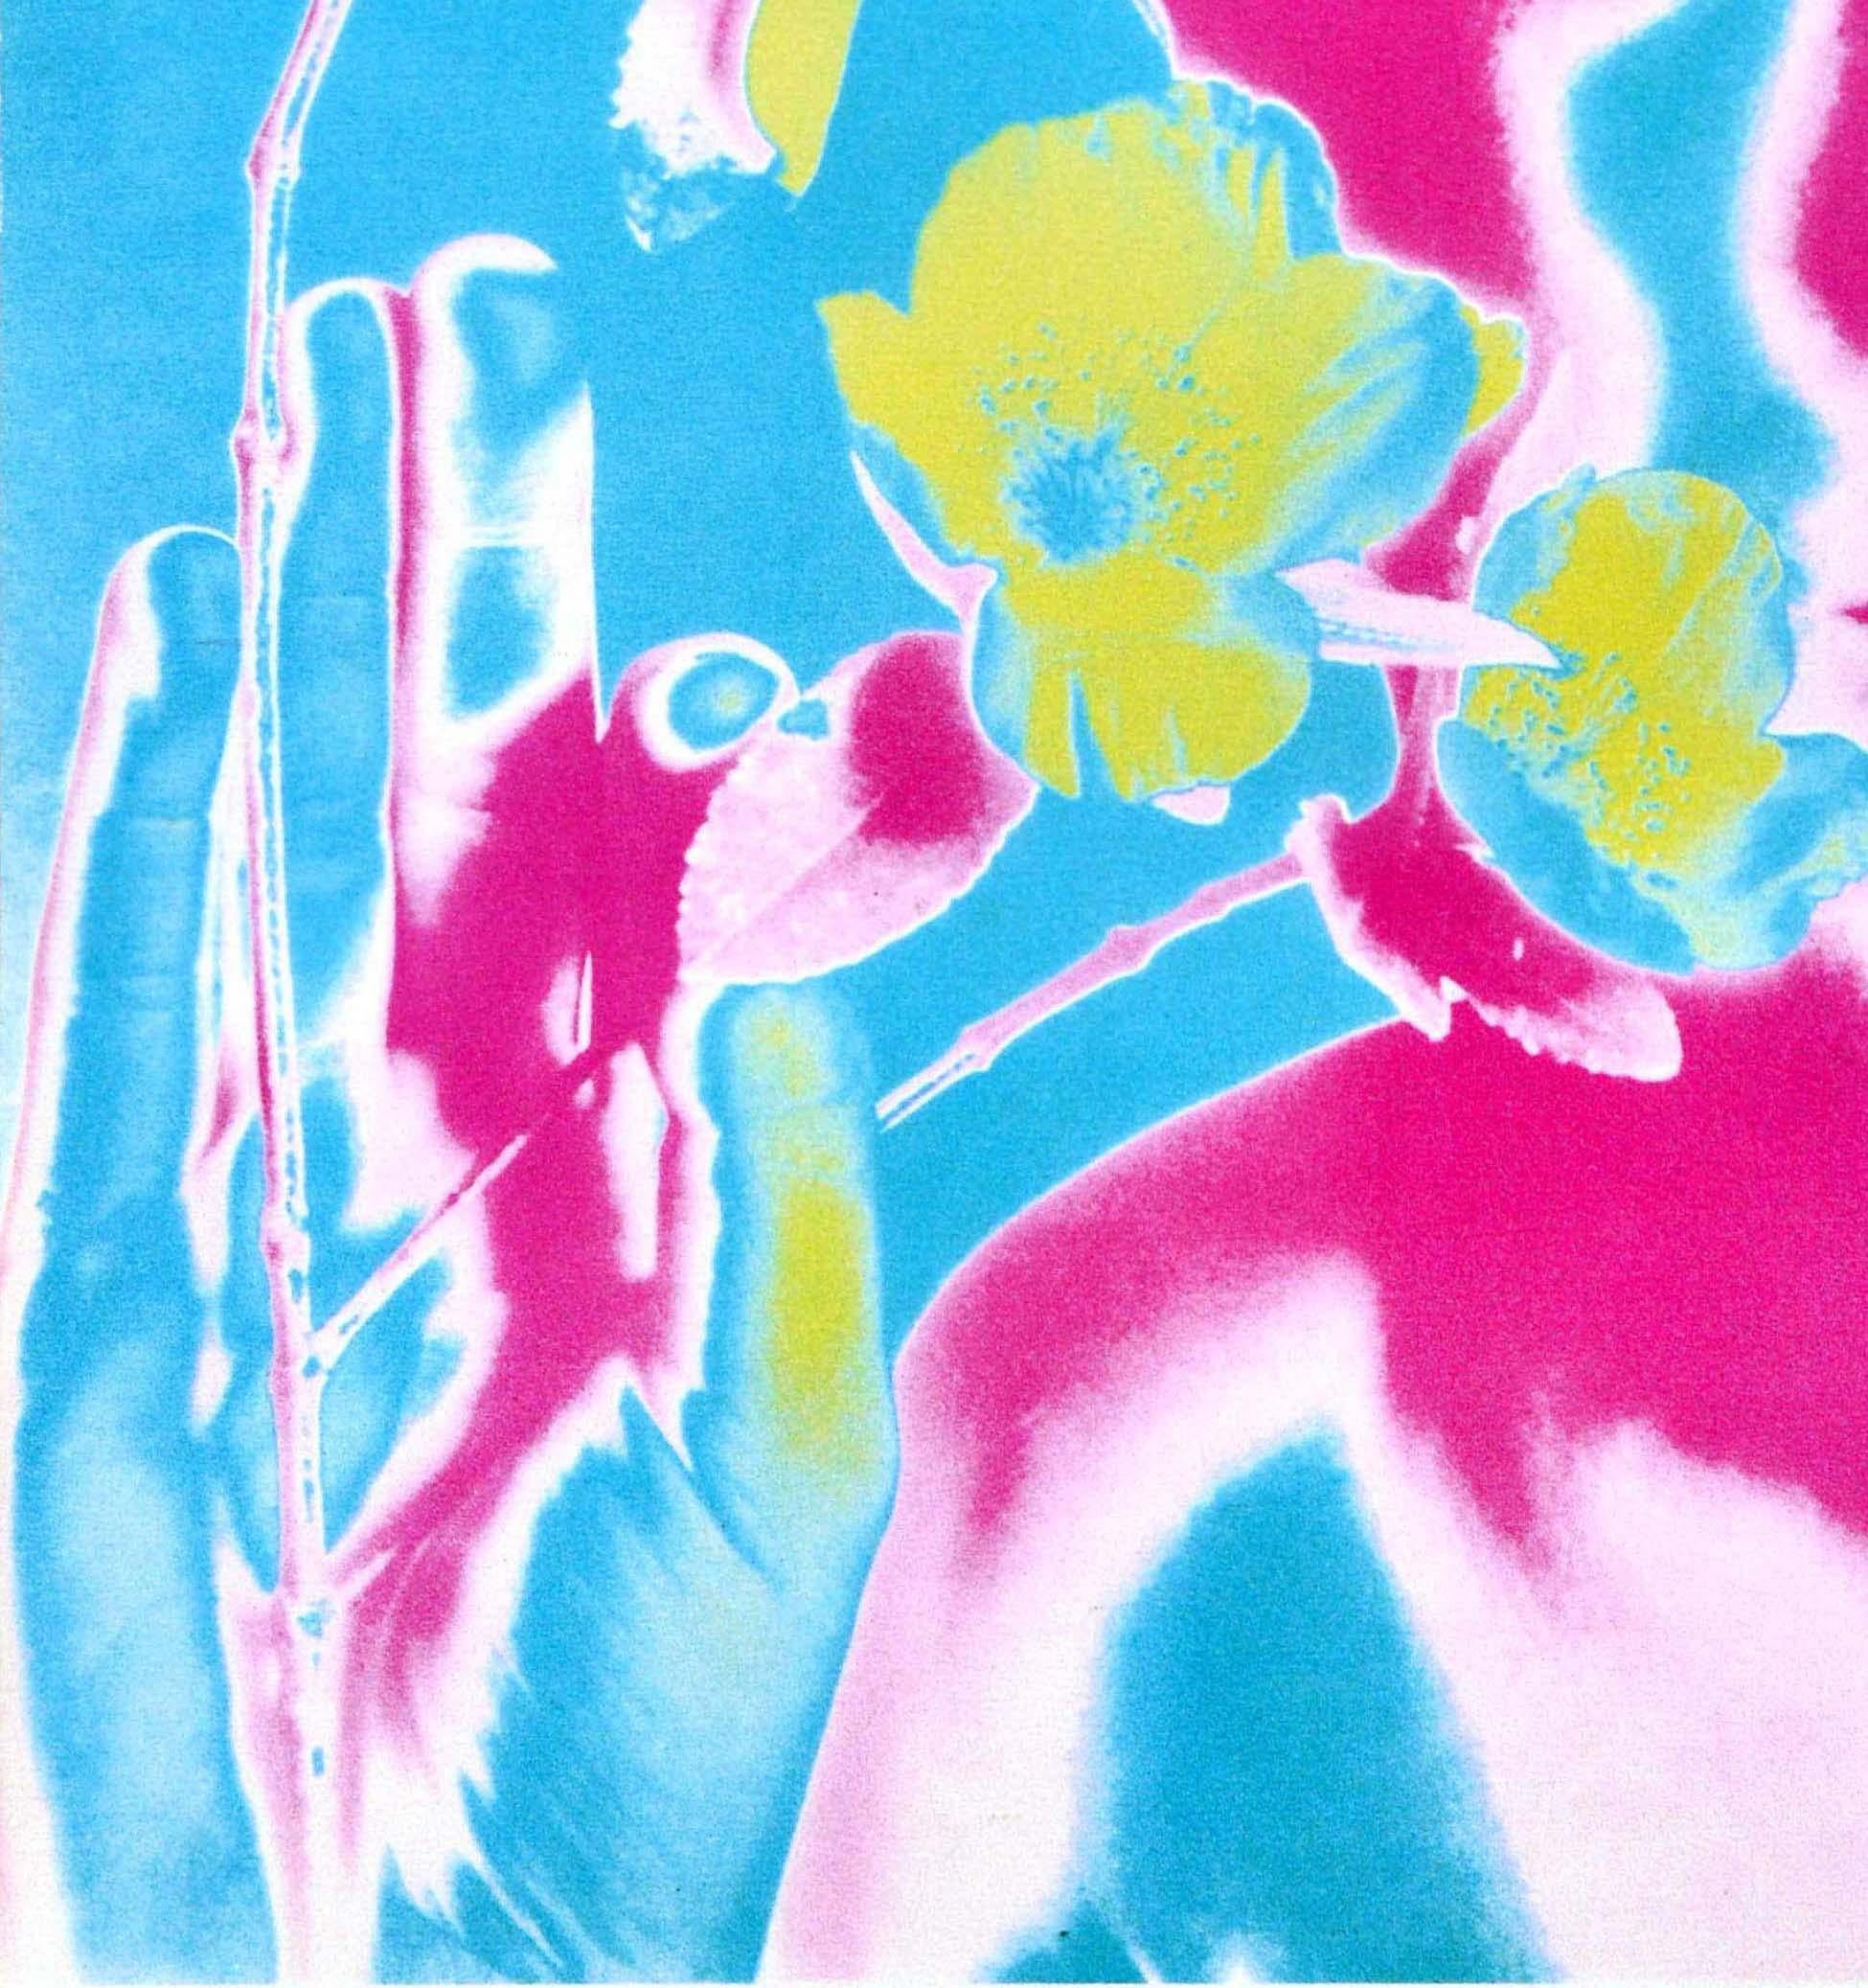 Affiche publicitaire originale de musique vintage présentant une photo colorée et psychédélique réalisée selon une nouvelle technique de solarisation par le photographe américain Richard Avedon (1923-2004) du guitariste et